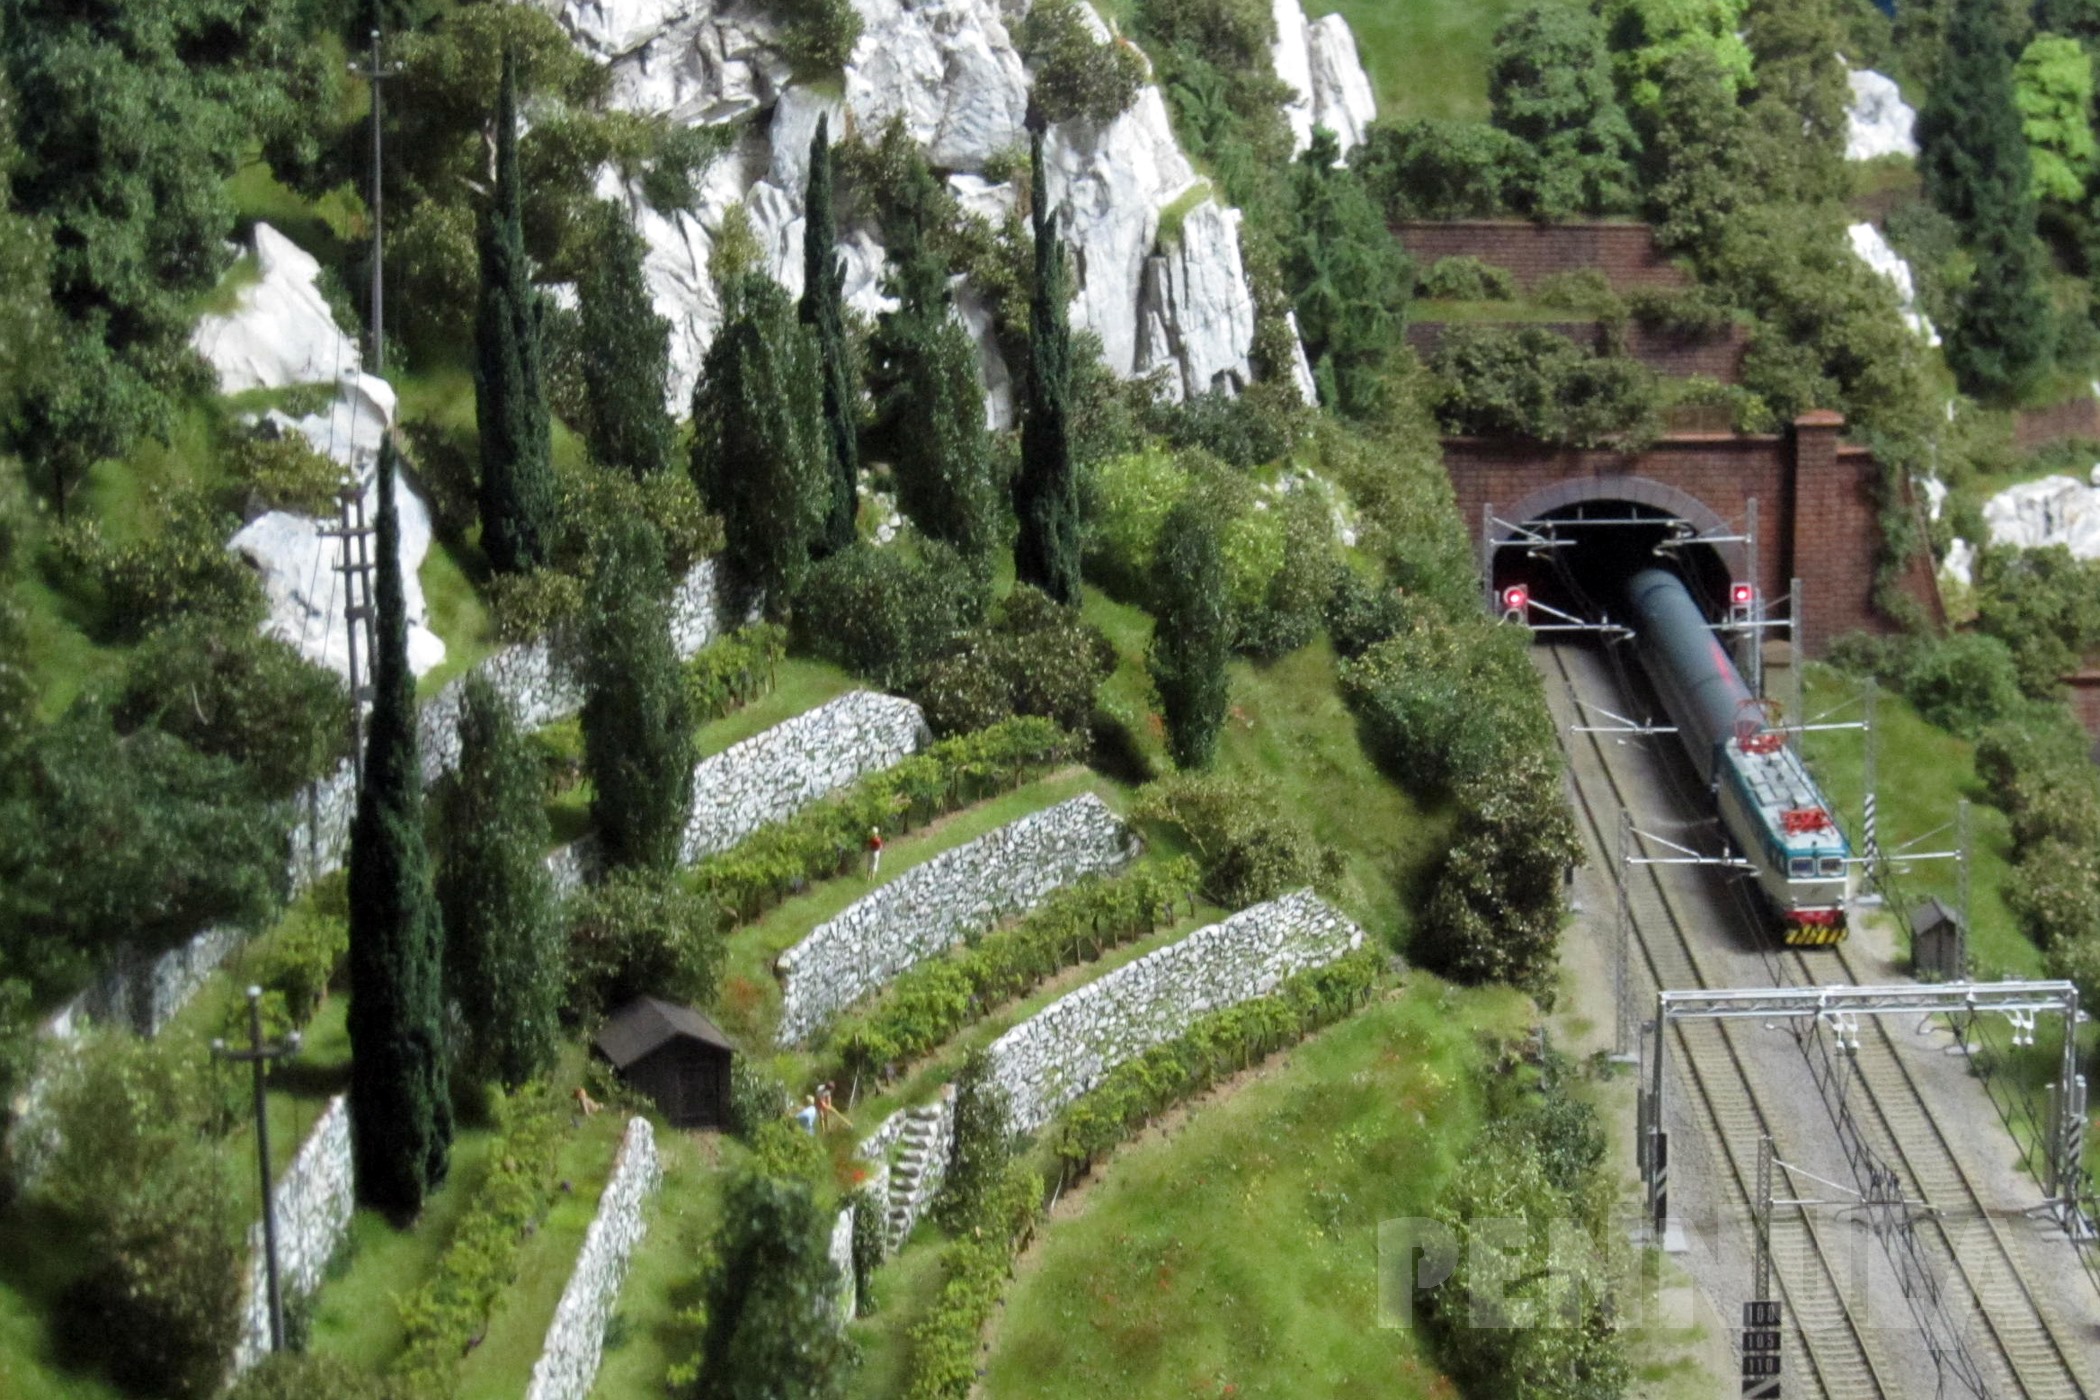 Eisenbahn und Züge in Italien: Eine wunderschöne Spur H0 Modelleisenbahn-Anlage